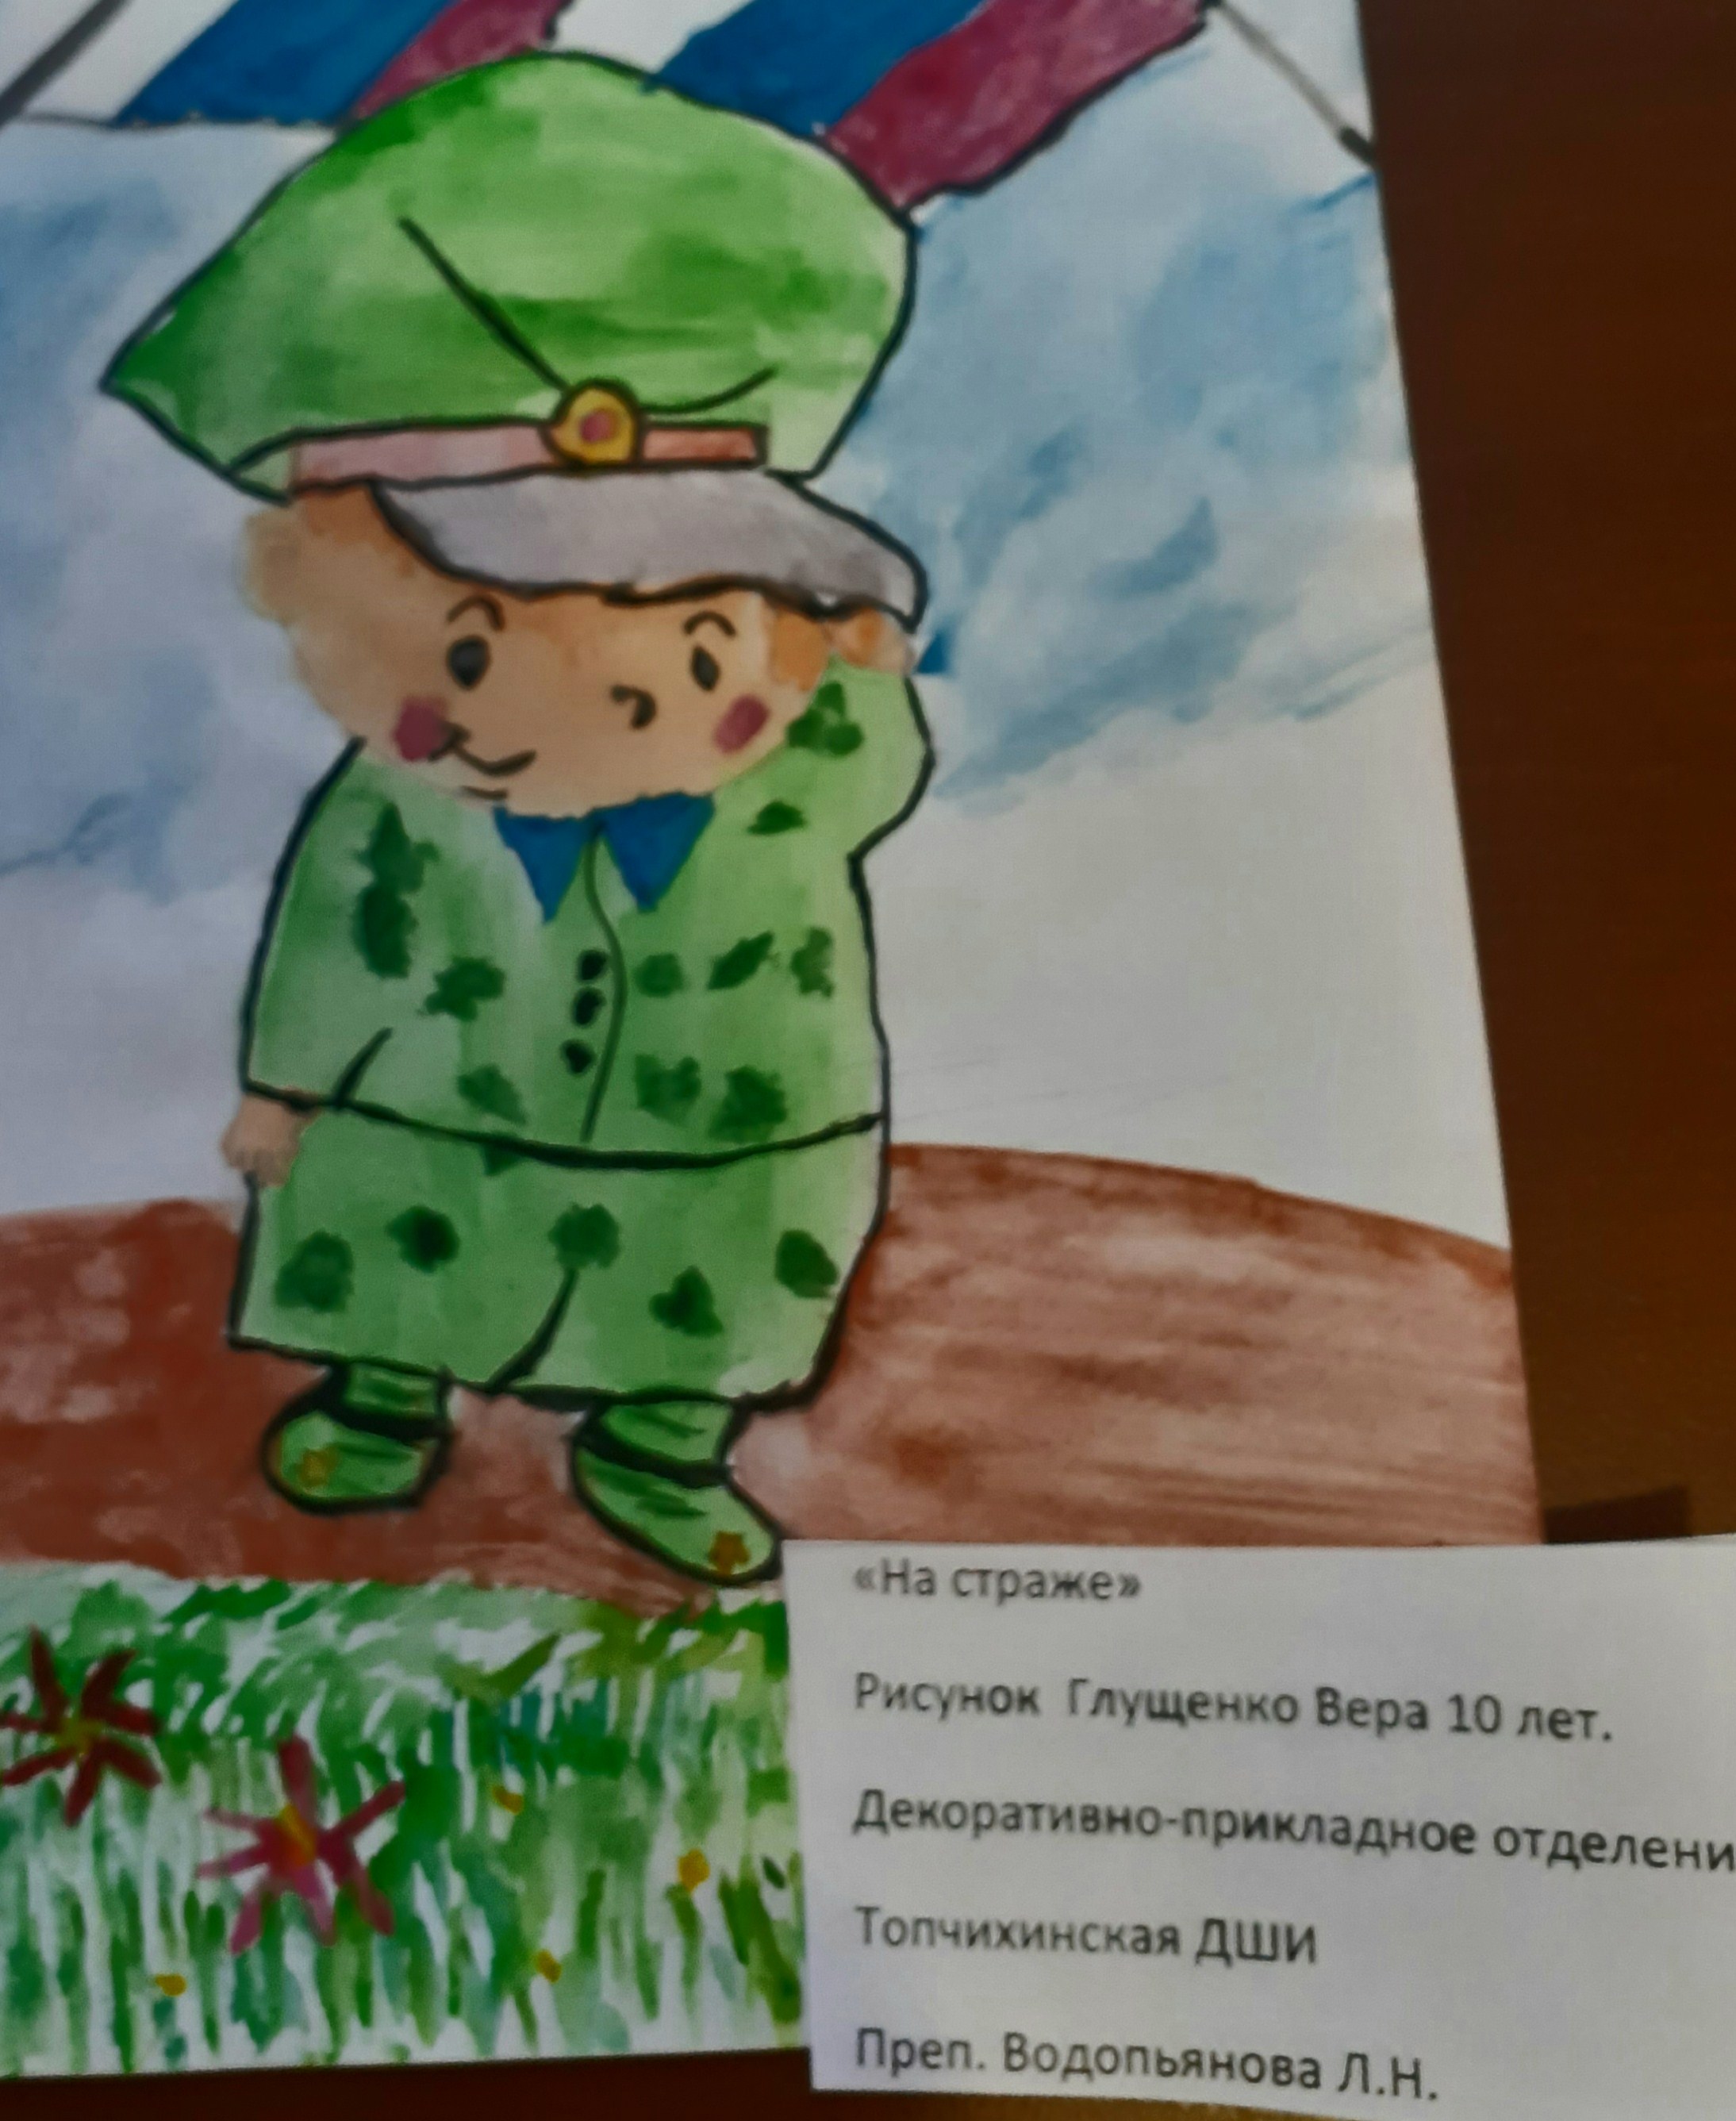 Юные дизайнеры военной формы продолжают радовать своими рисунками